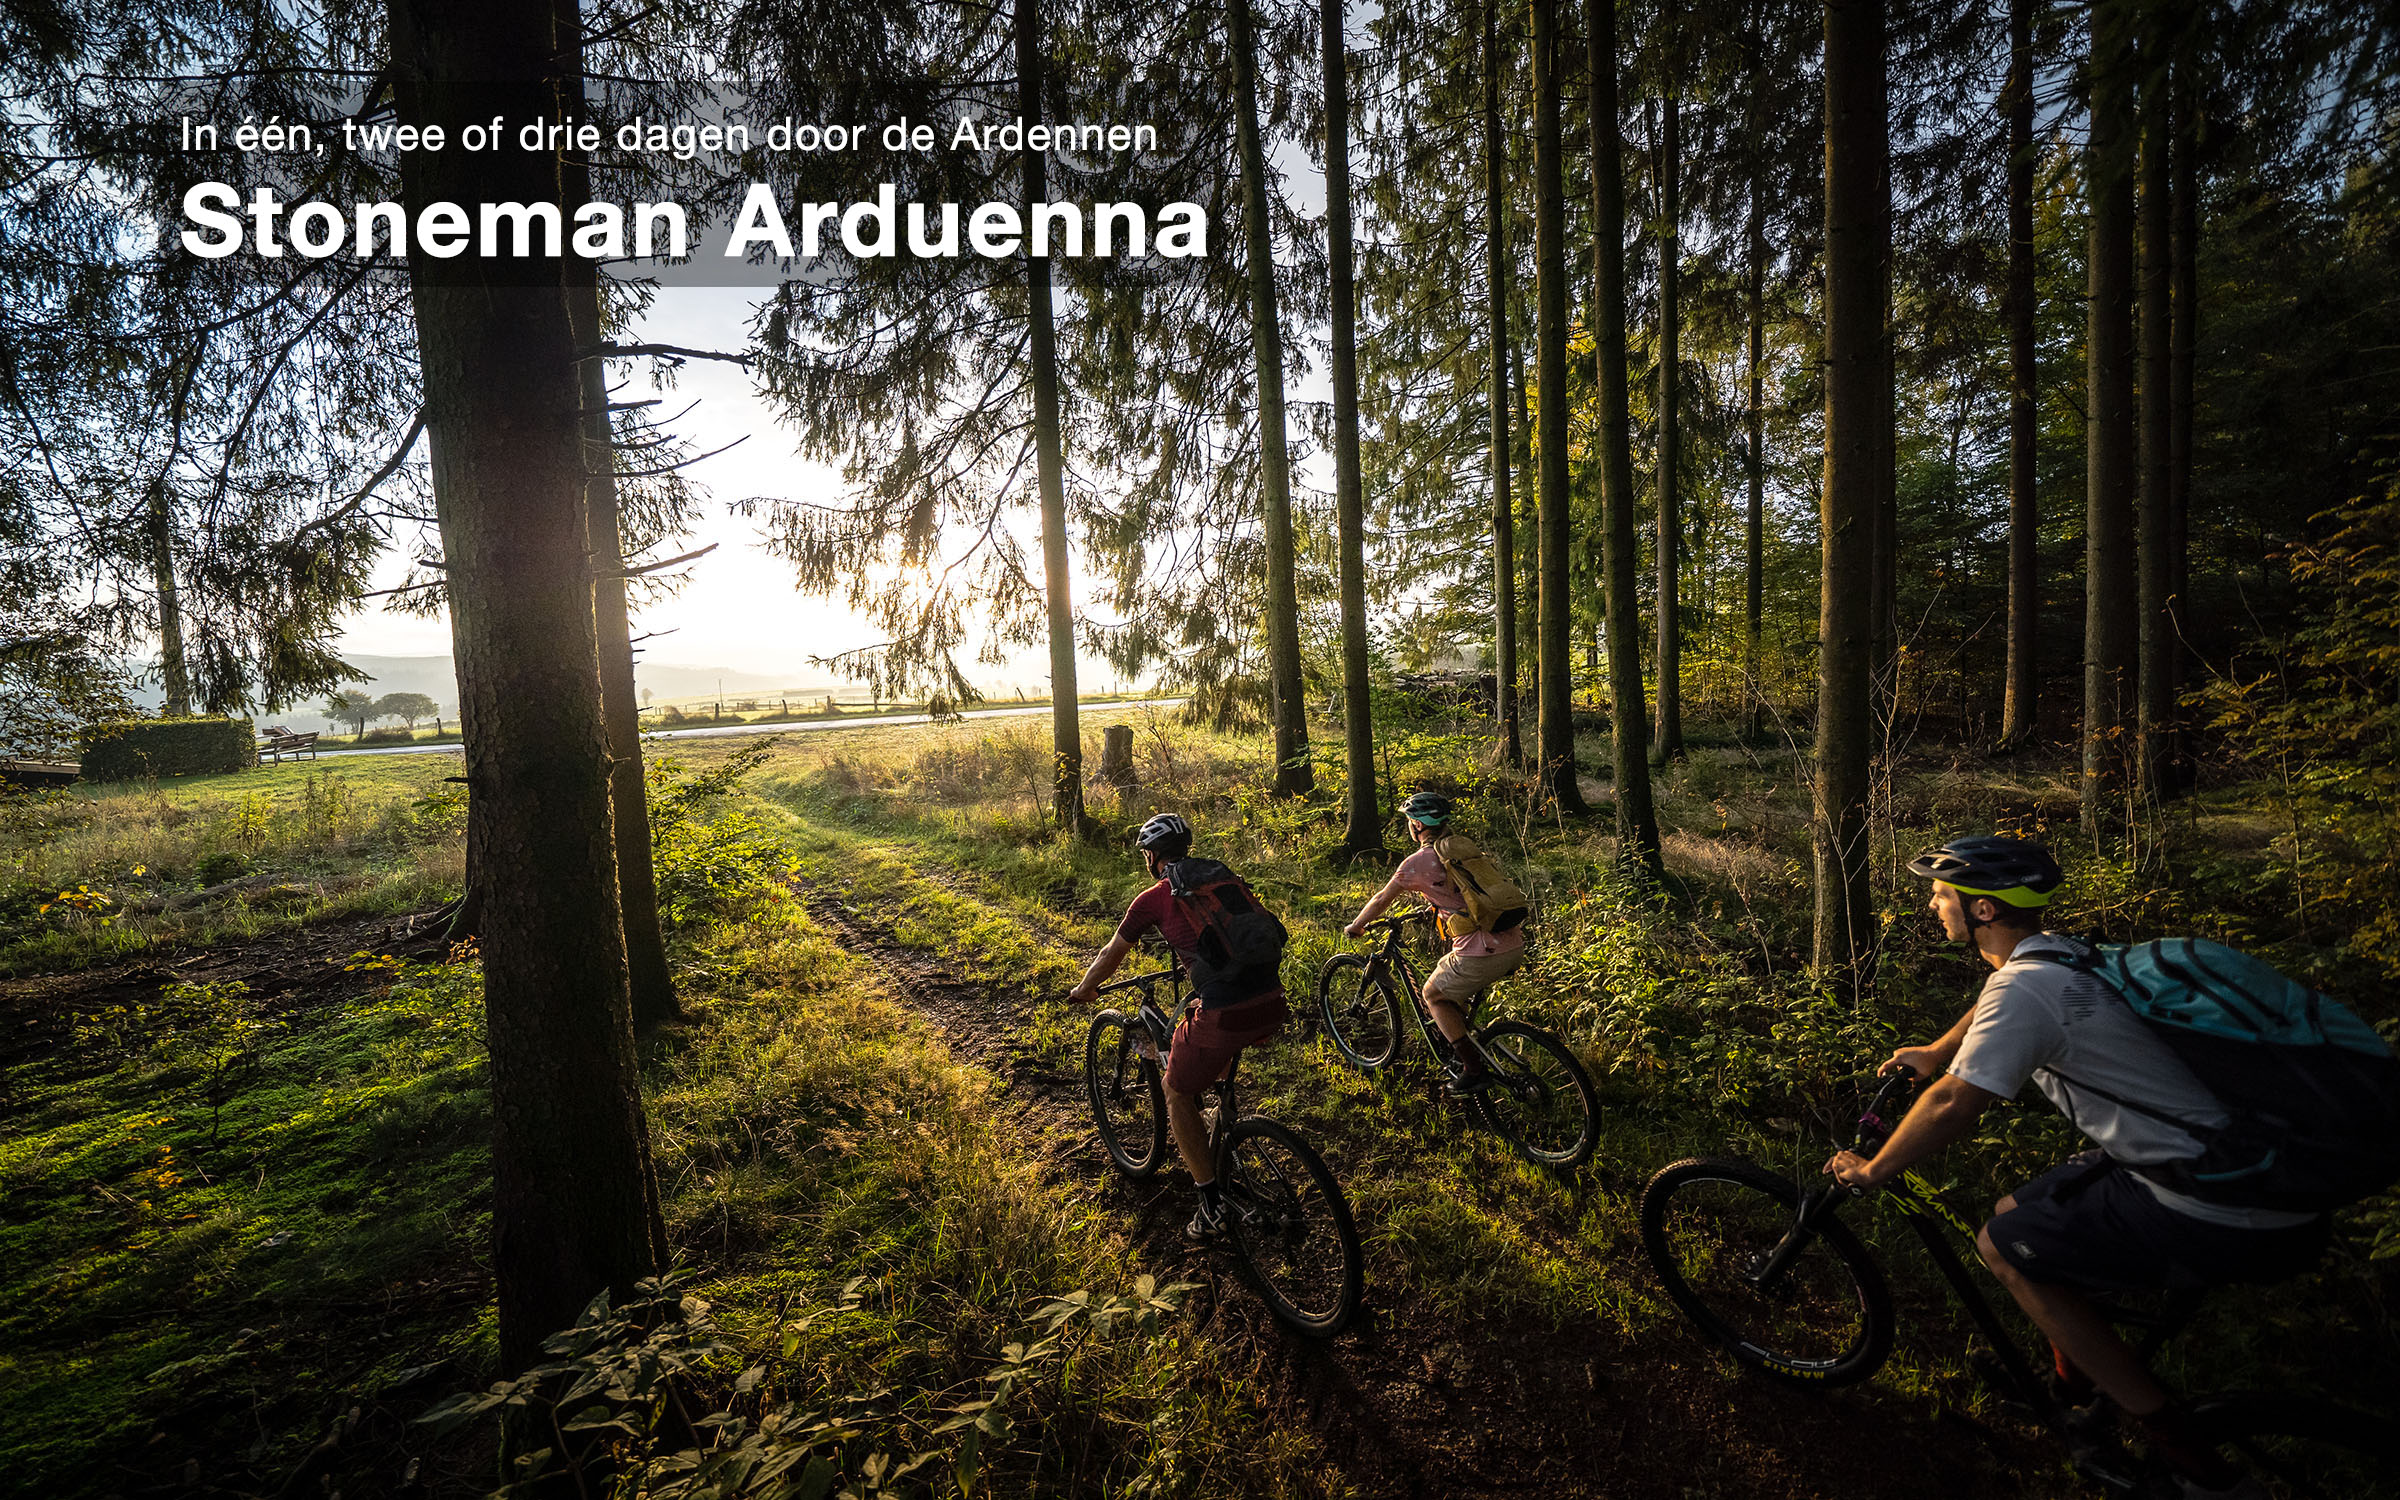 Stoneman Arduenna – Mountainbiken in de Ardennen